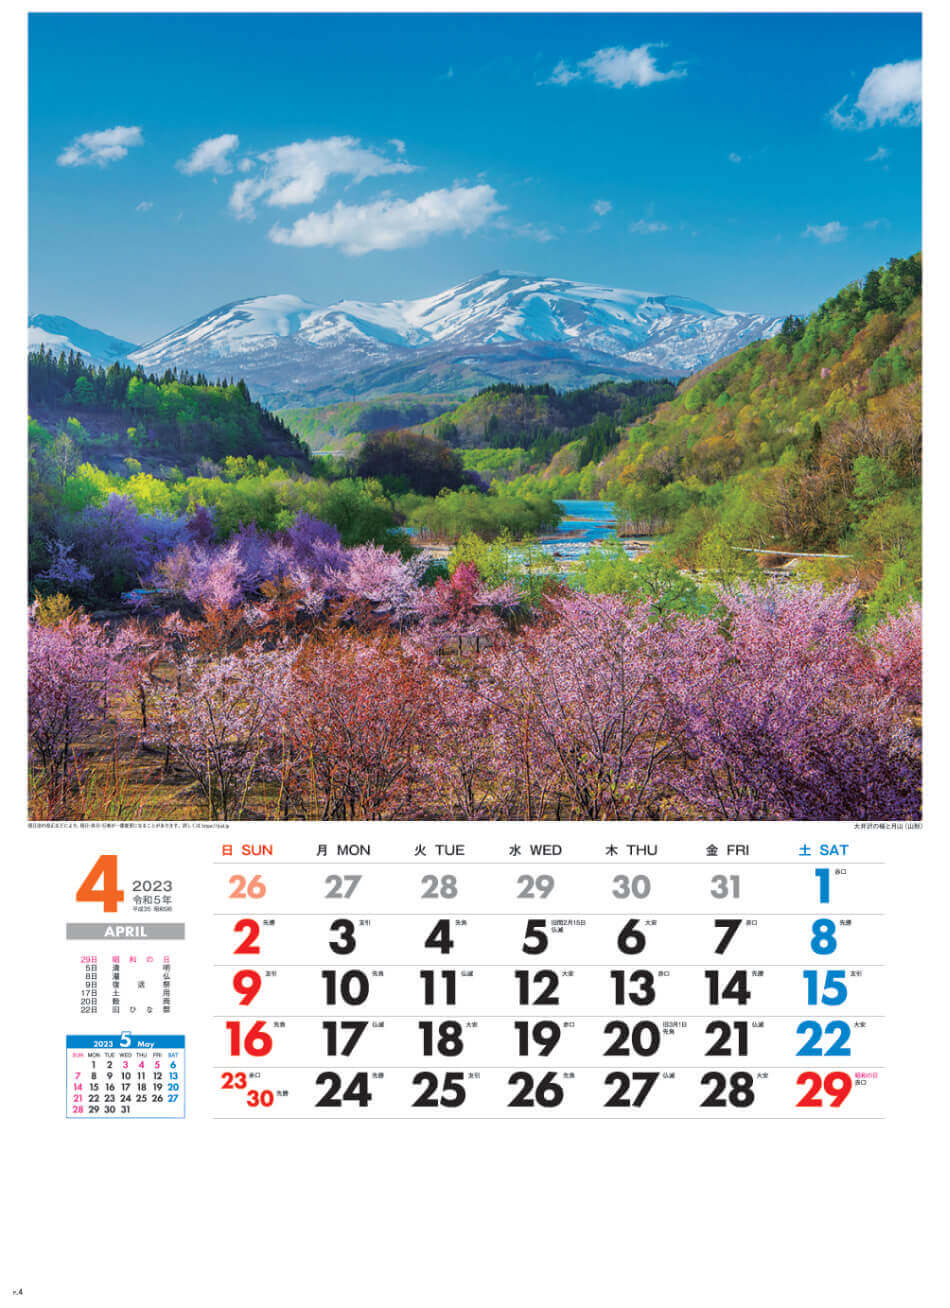 4月 大井沢と月山(山形) 美しき日本 2023年カレンダーの画像